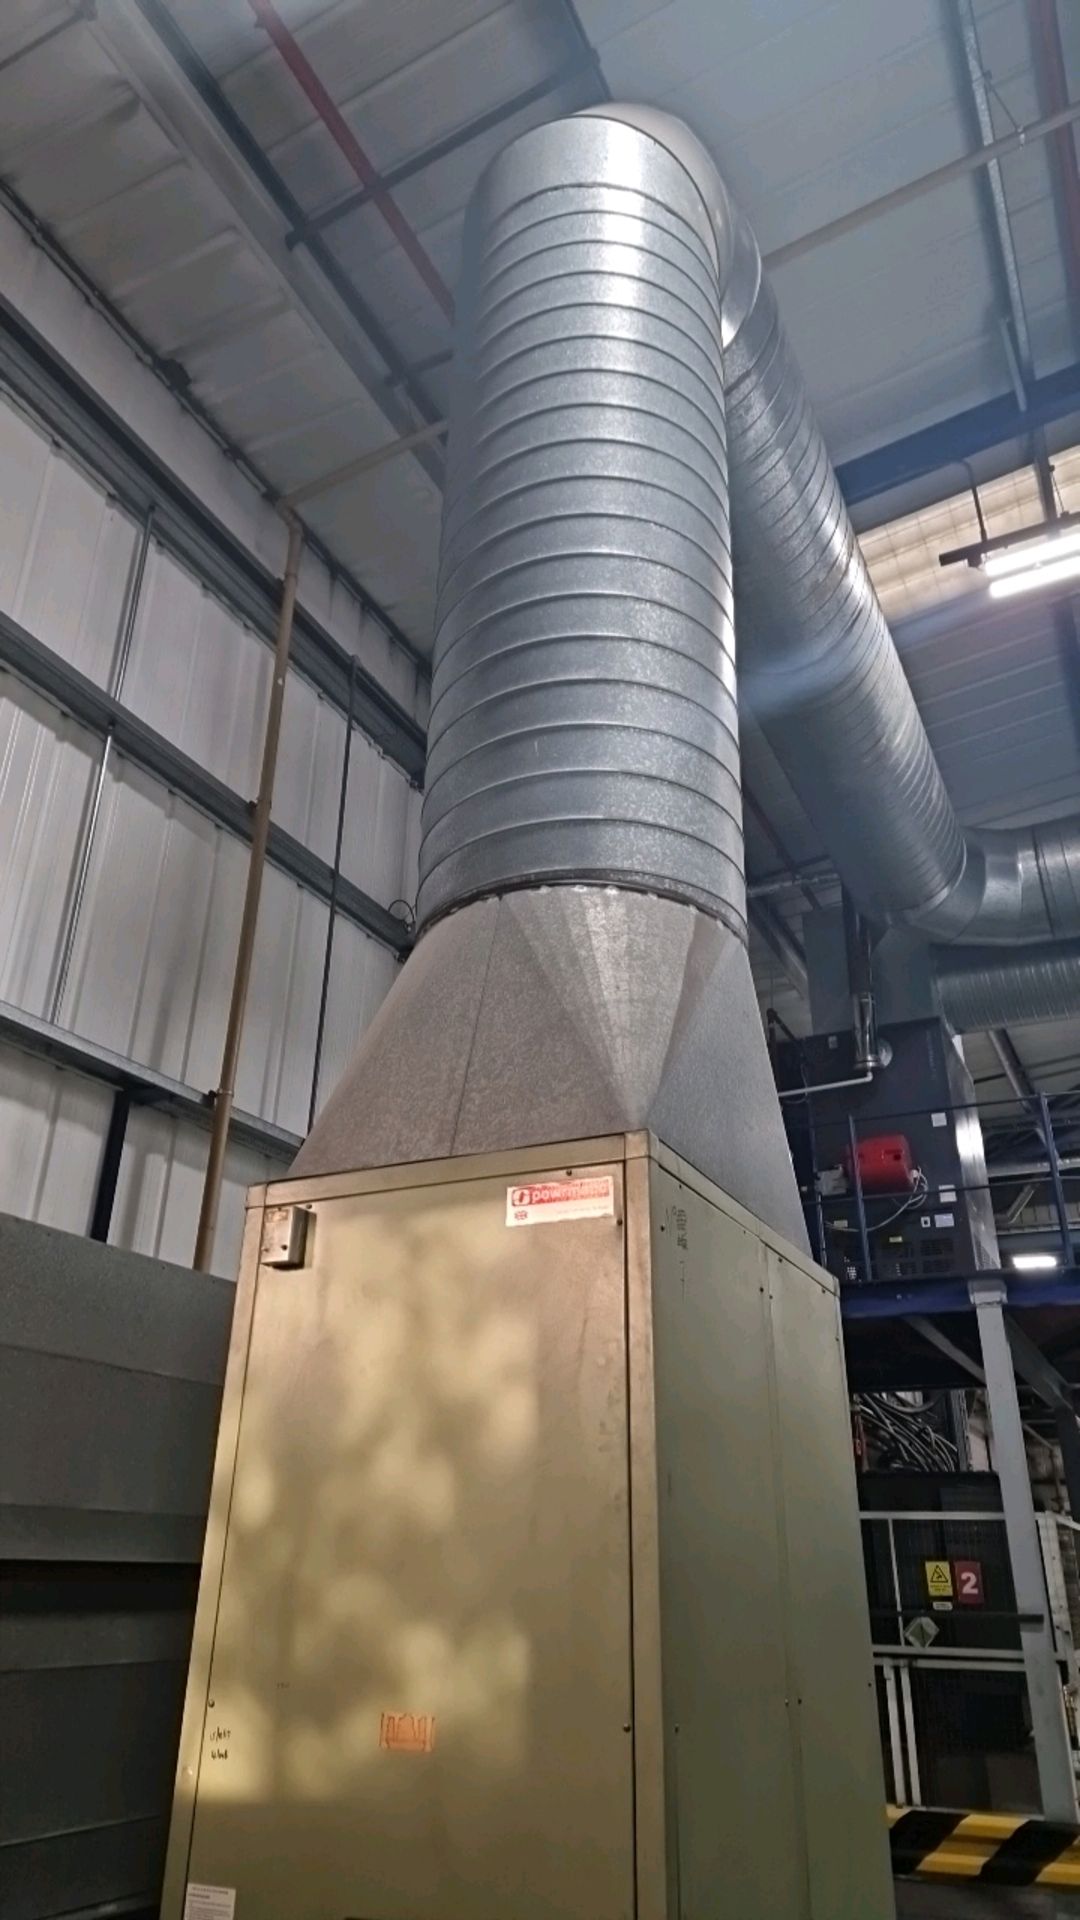 Powrmatic Industrial Heating Unit - Bild 3 aus 10